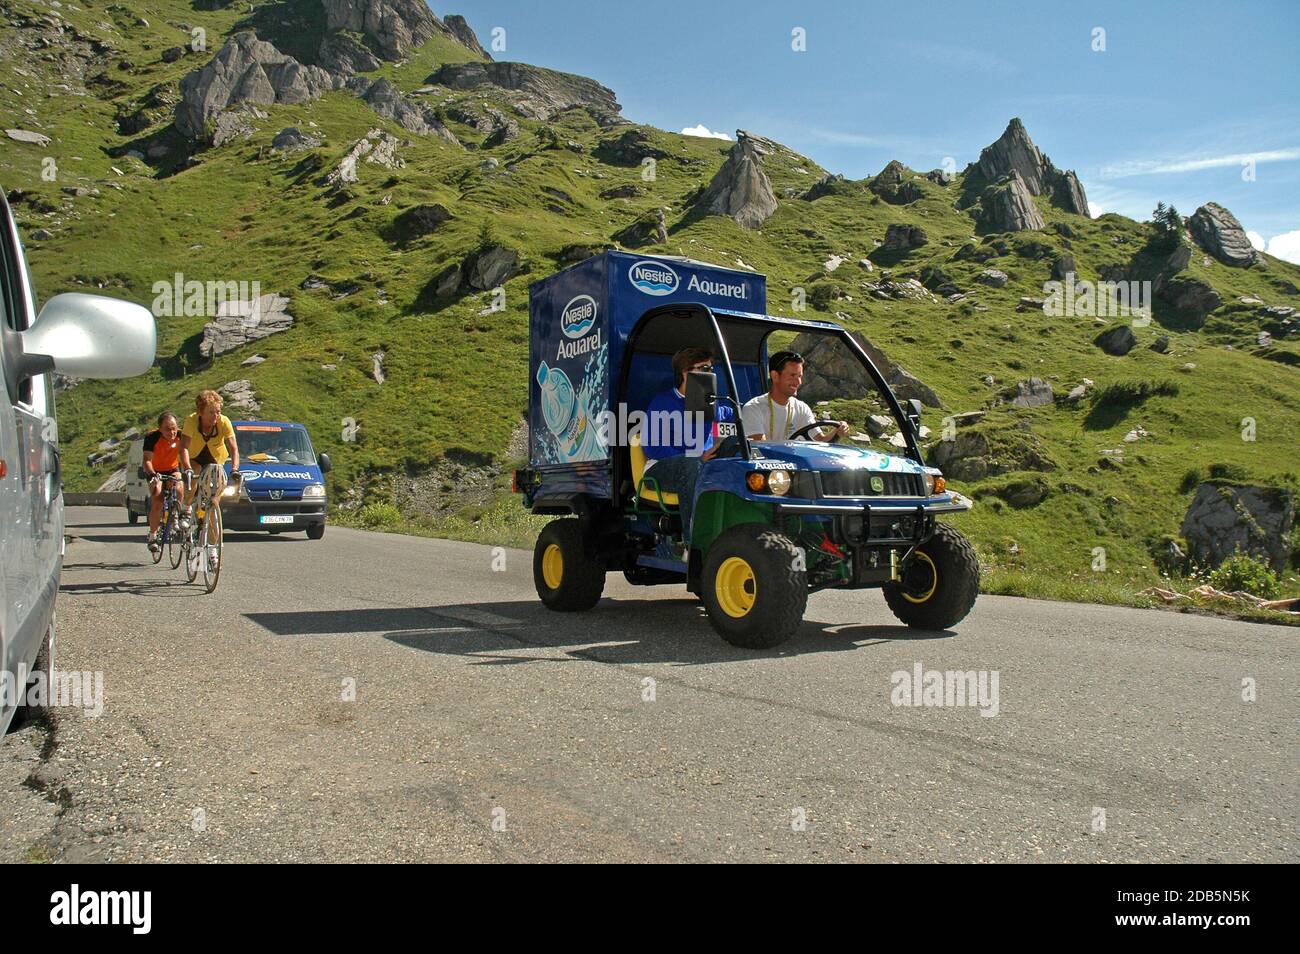 Tour de France Aquarel Vehicle, das sich im Juli 2005 vor den Fahrern auf der Passstraße des Cormet de Roselend in den französischen Alpen befindet. Stockfoto